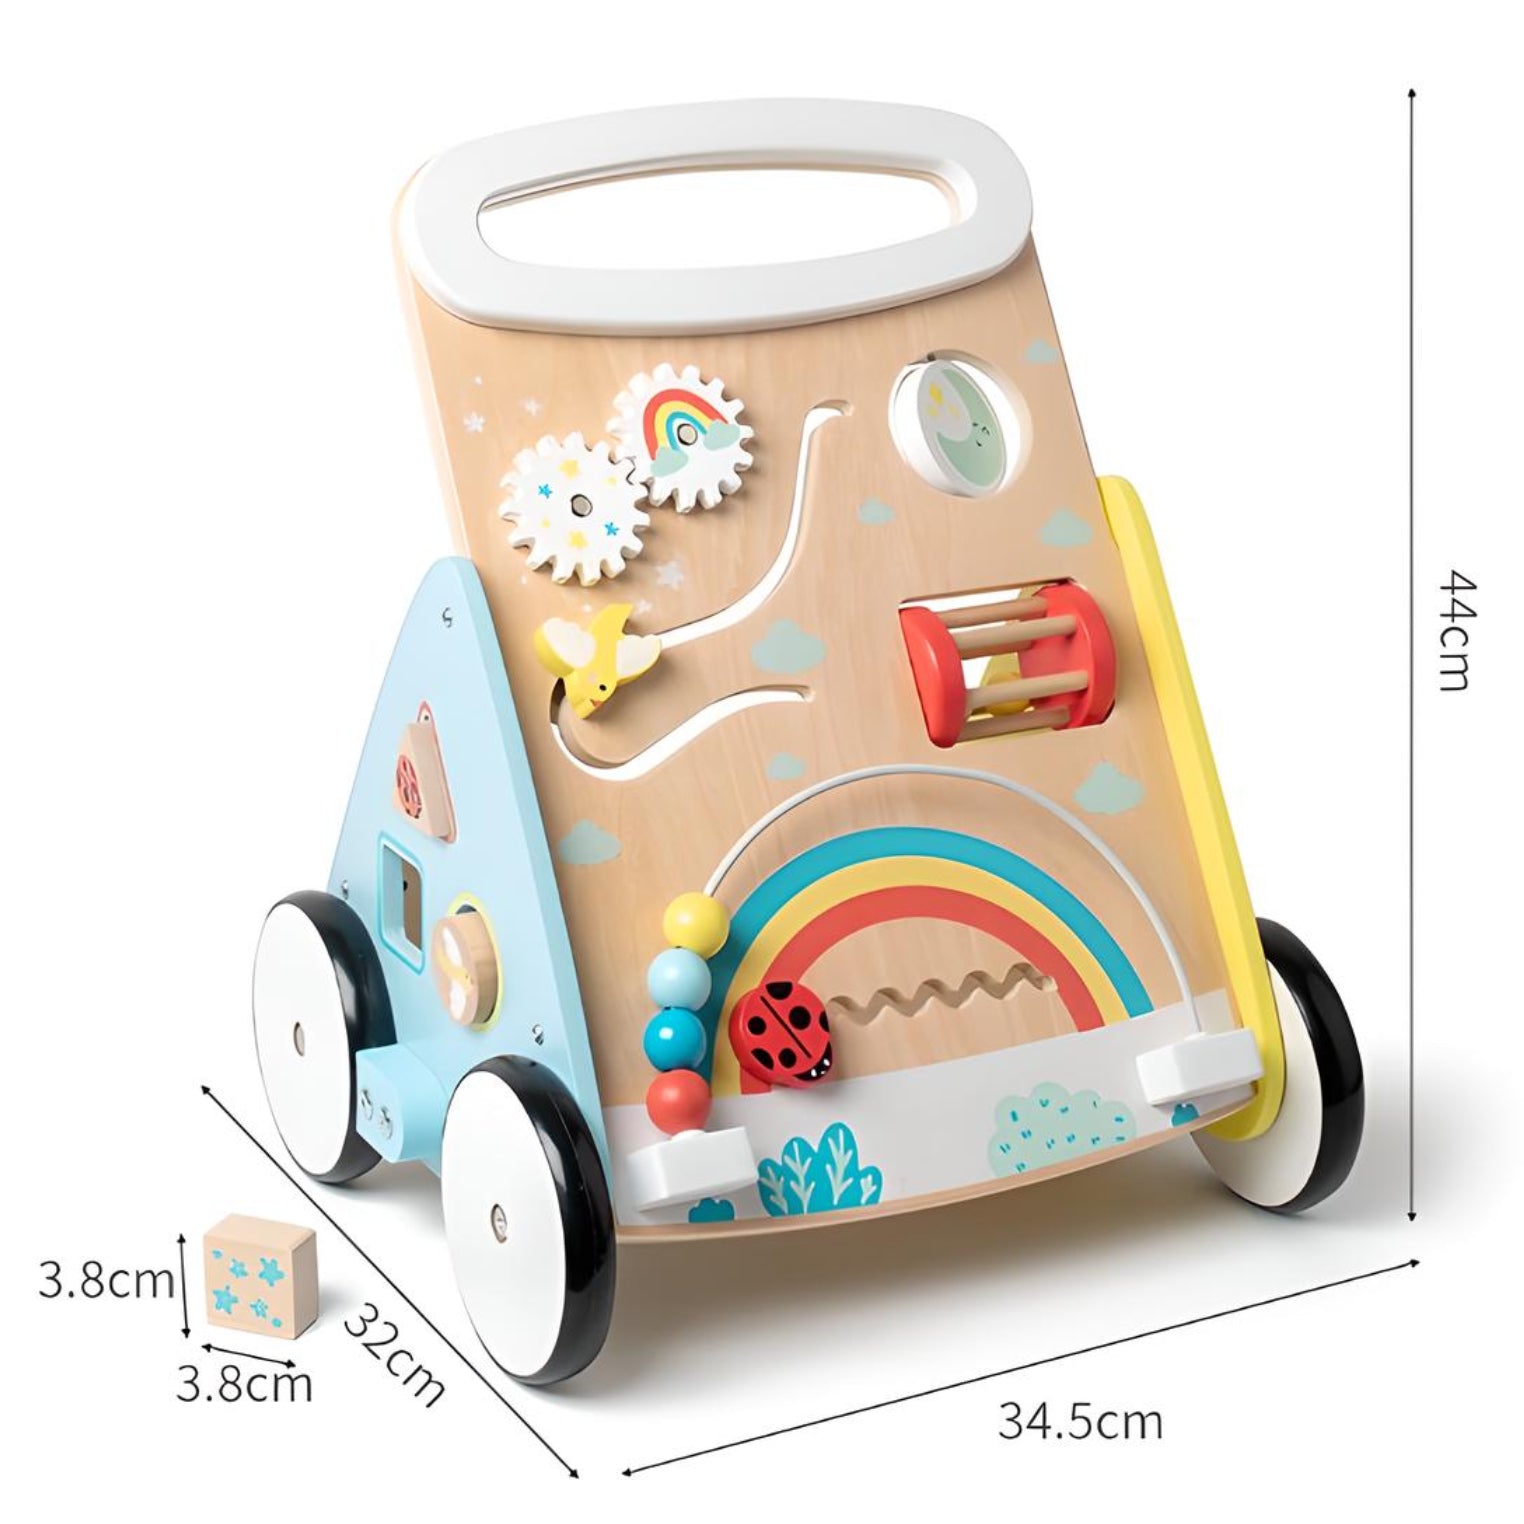 Petit Seal Das Holz-Toddler-Auto mit pädagogischer Spielzeugplatte - Ein vielseitiges Spielzeug für Kleinkinder!